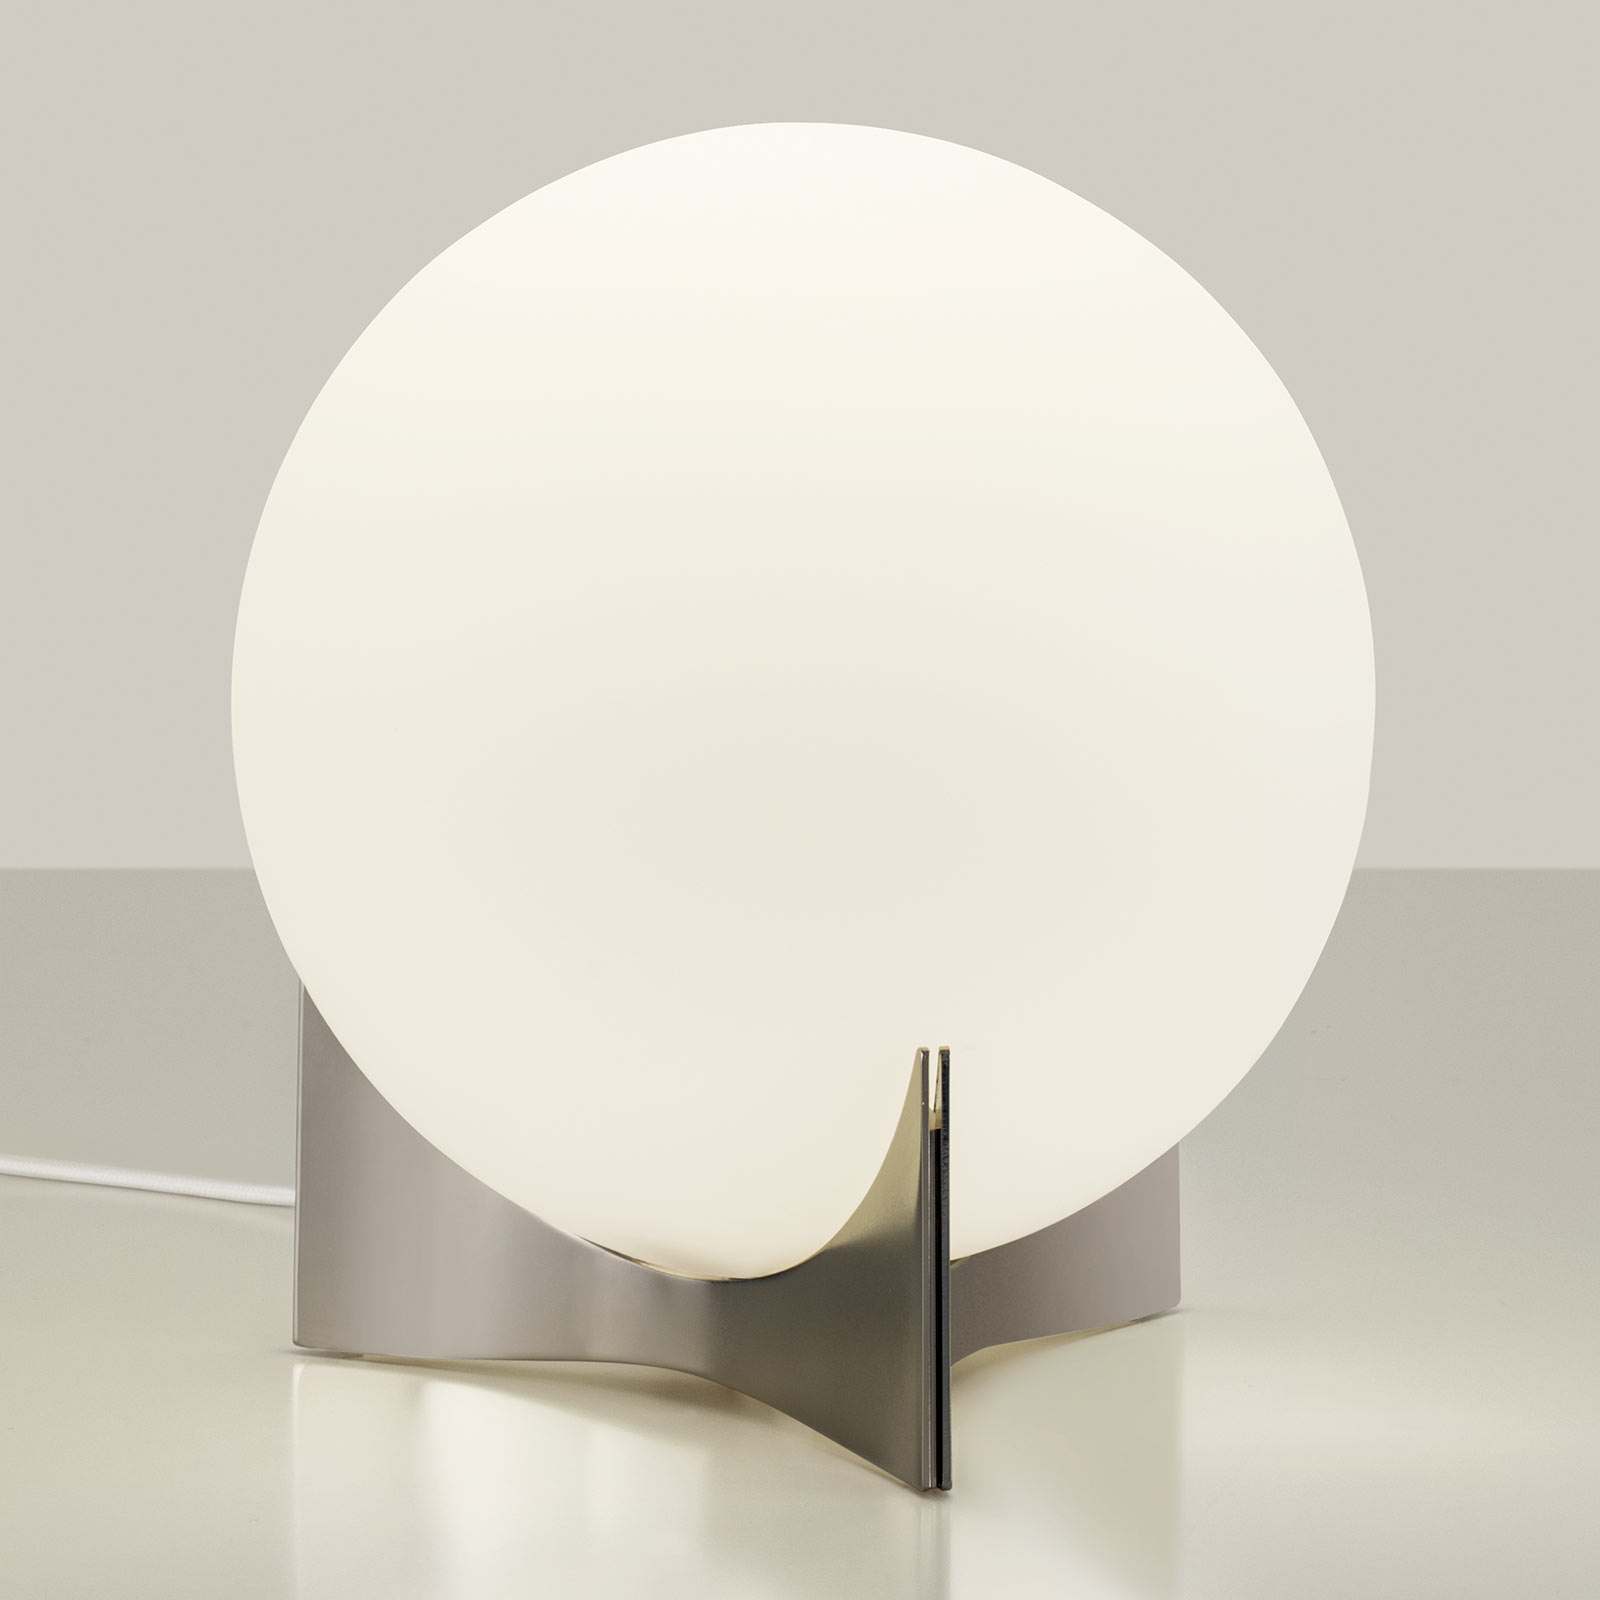 Terzani Oscar table lamp made of glass, nickel